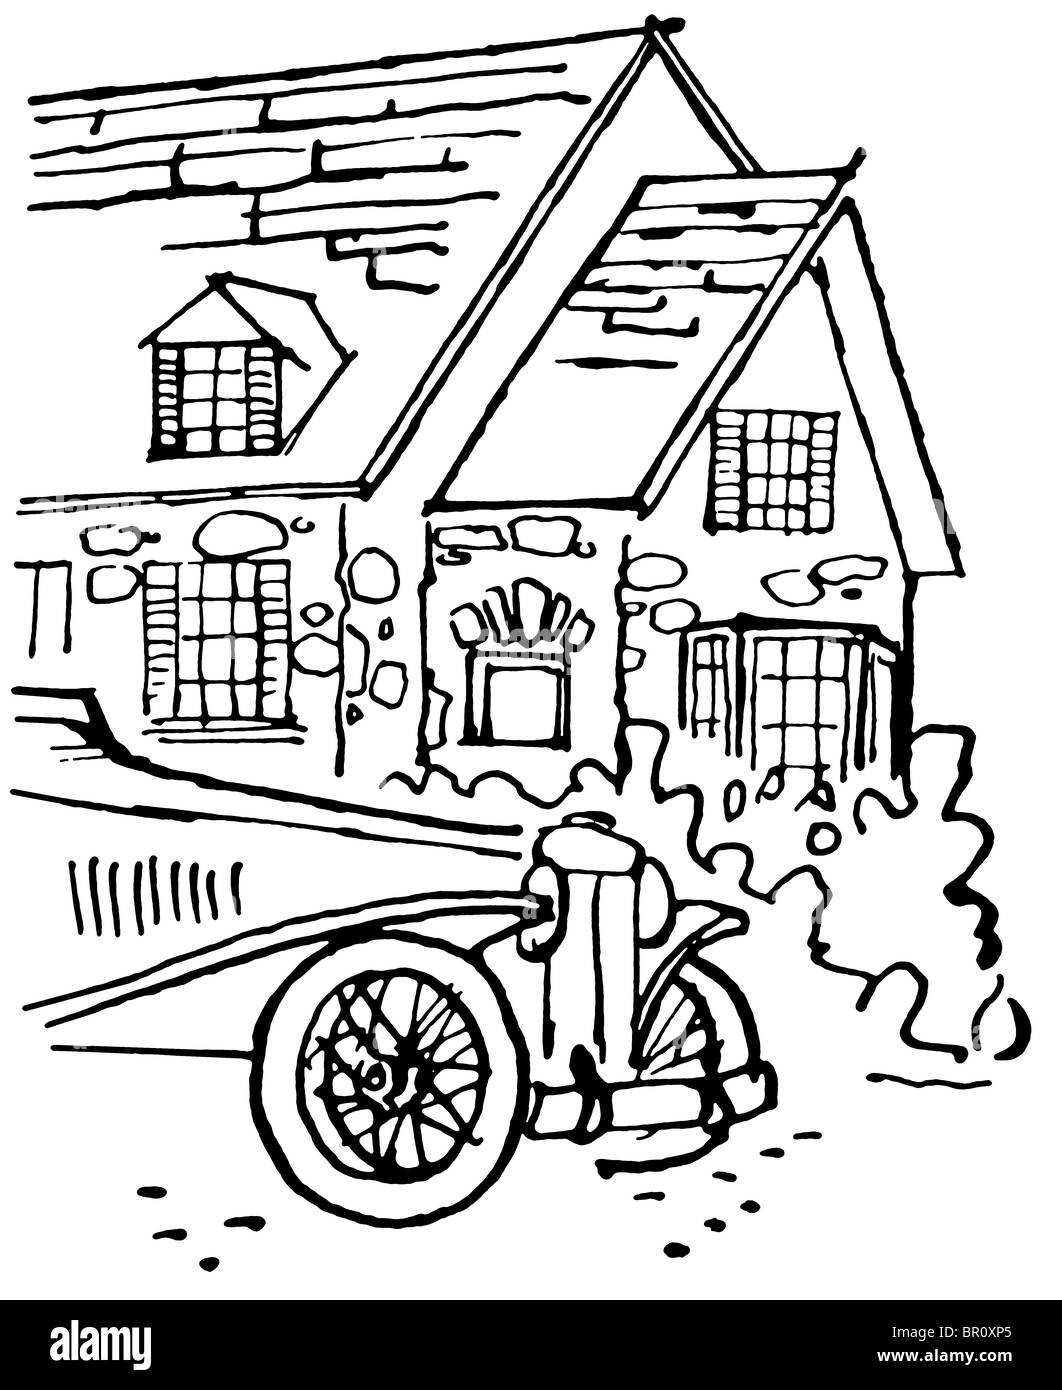 Eine schwarz-weiß Version einer Illustration eines Hauses mit einem altmodischen Auto im Vordergrund Stockfoto